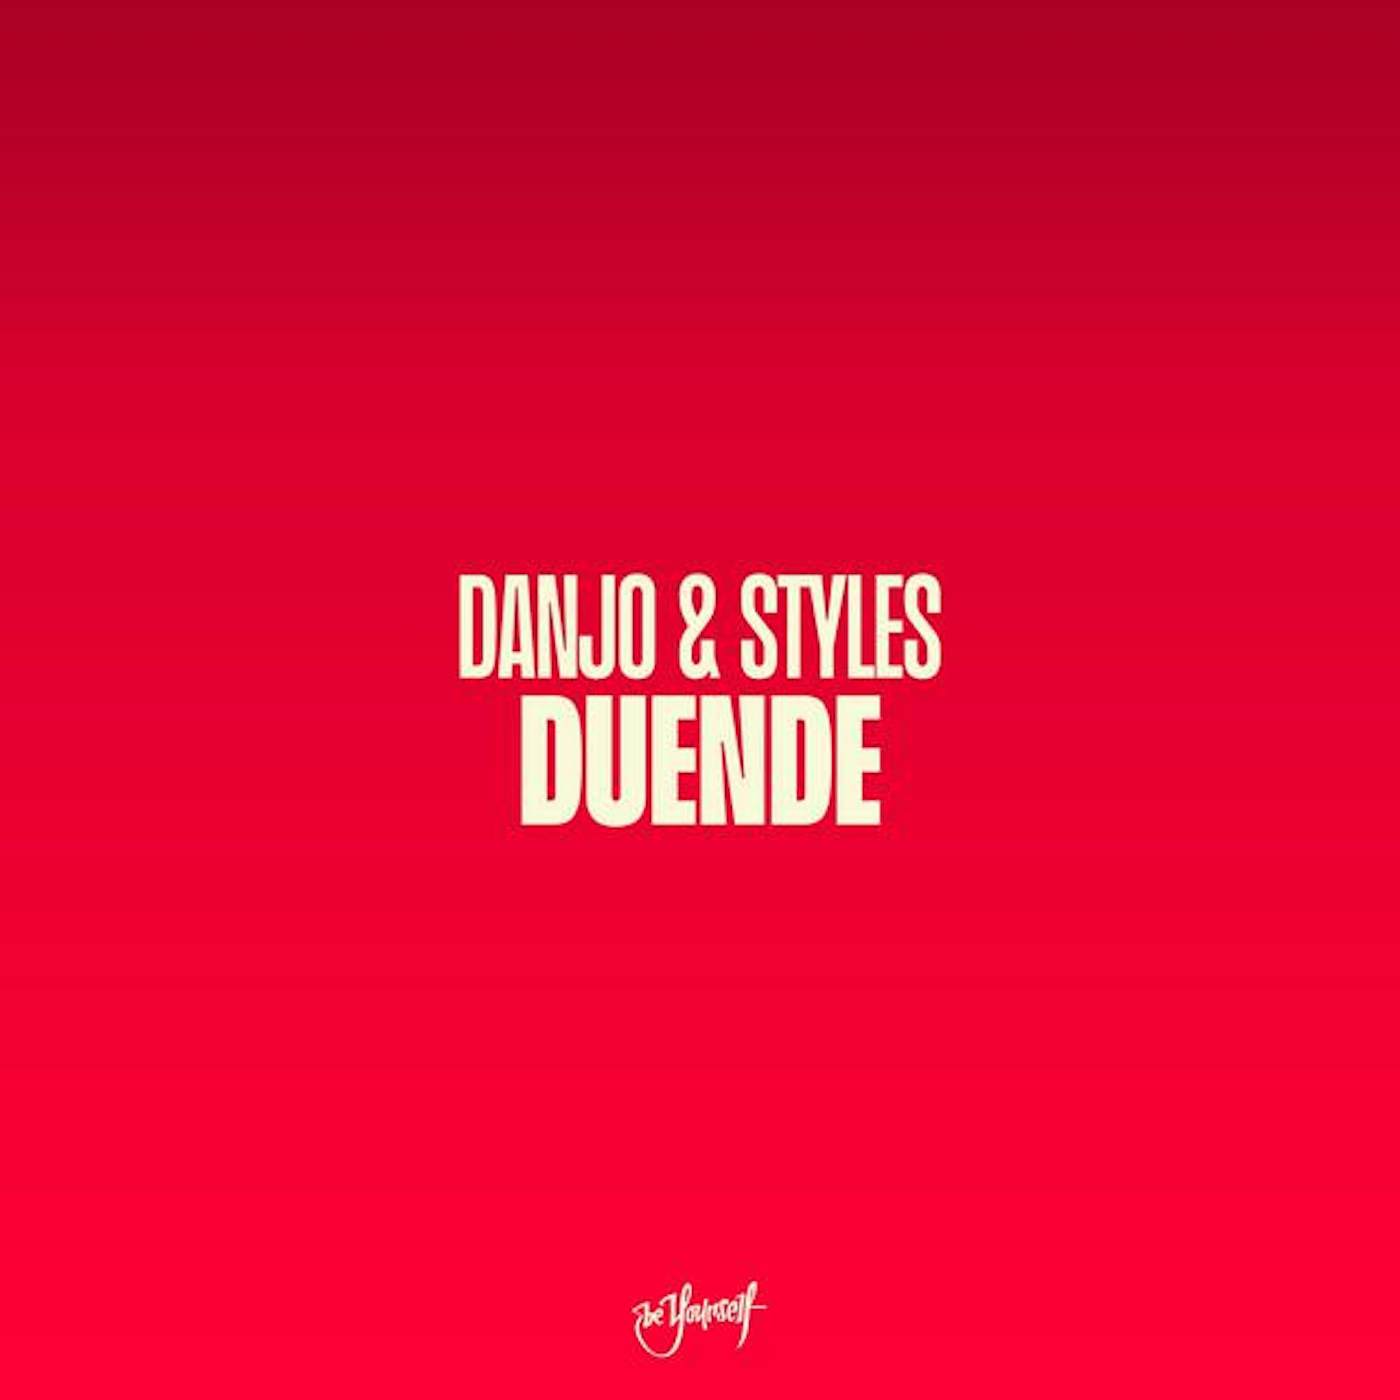 Danjo & Styles